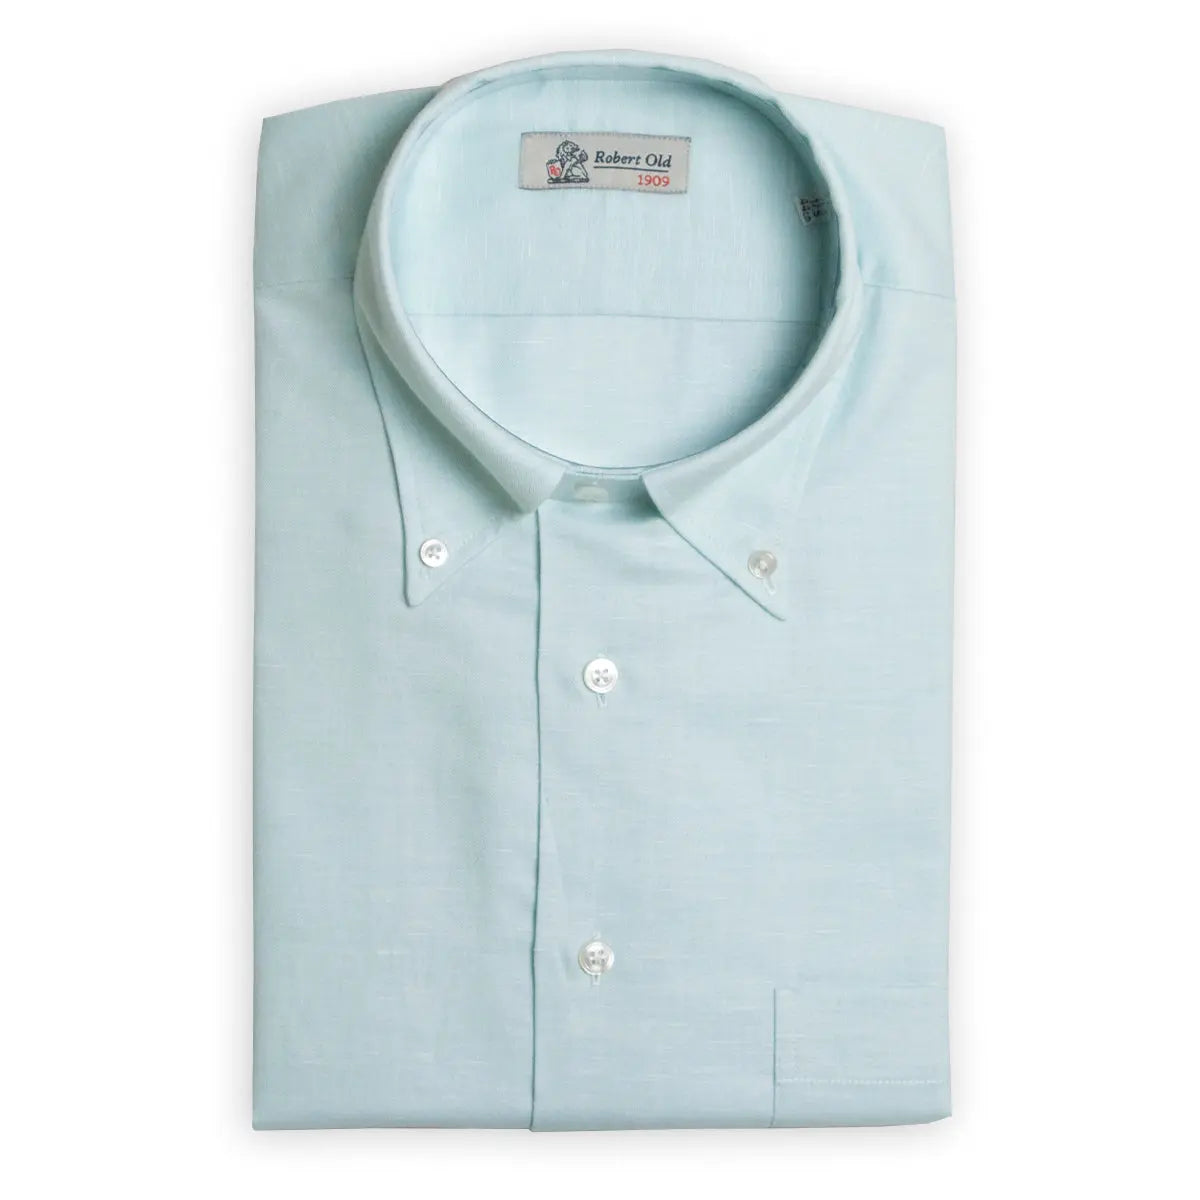 Mint Swiss Cotton &amp; Linen Long Sleeve Shirt  Robert Old   